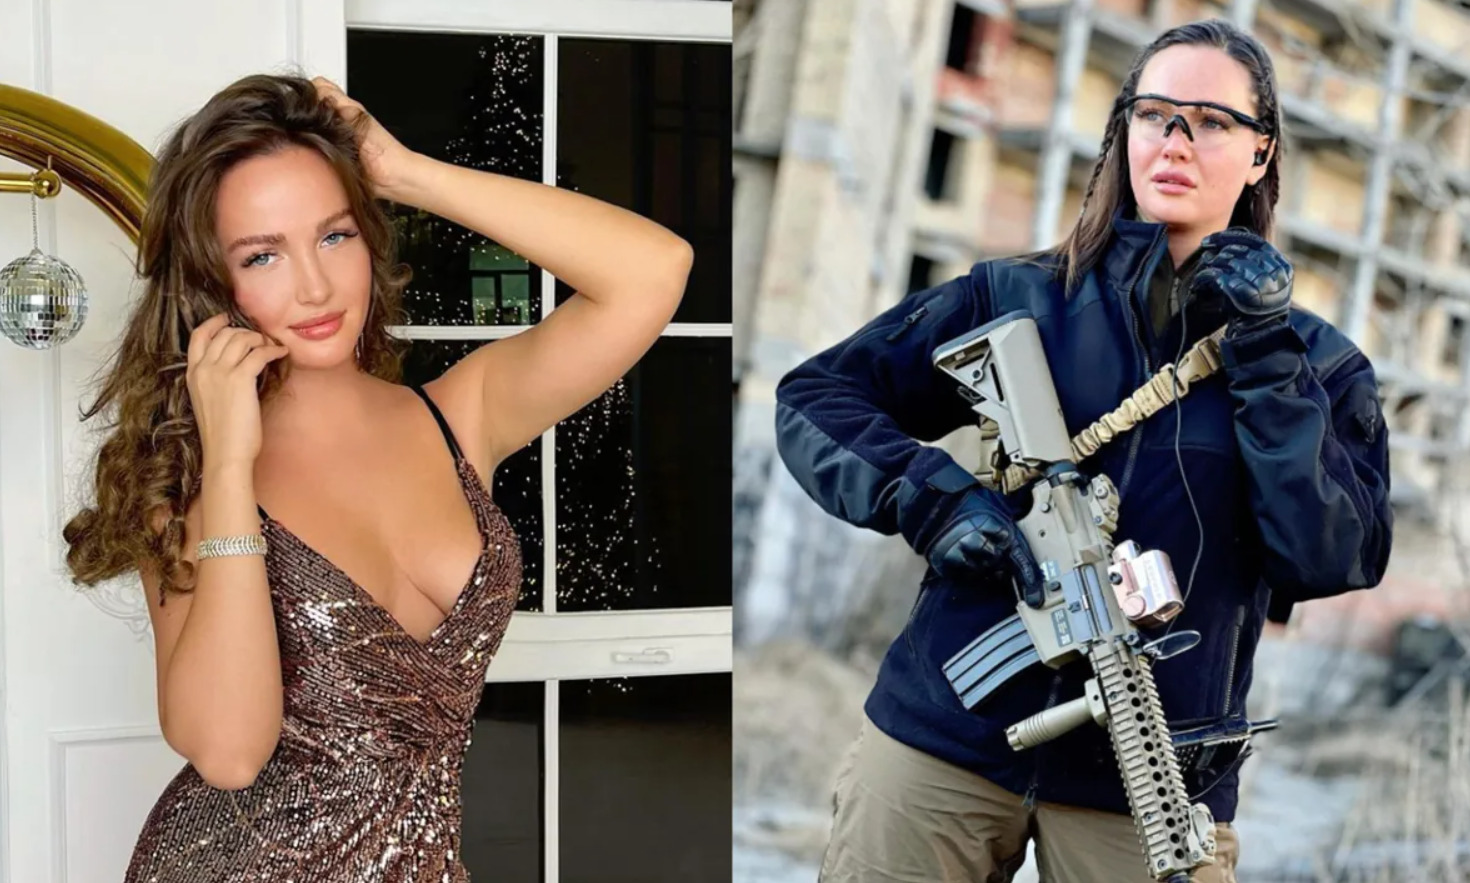 Ukrajinu sa rozhodla brániť aj bývalá Miss Ukrajina. Zdroj: anastasiia lena/ Instagram